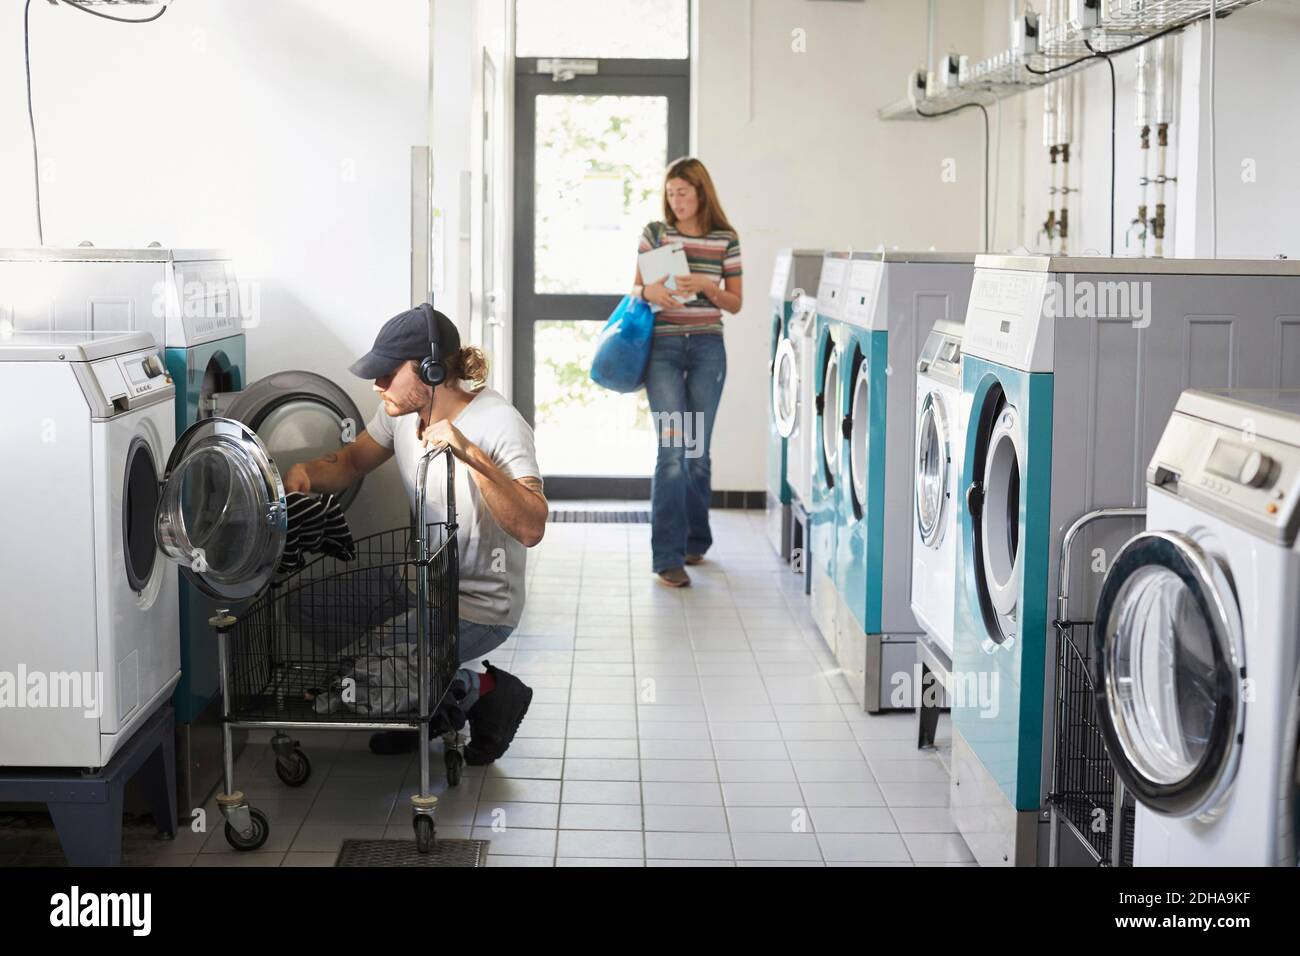 Man using washing machine while woman walking in laundromat Stock Photo